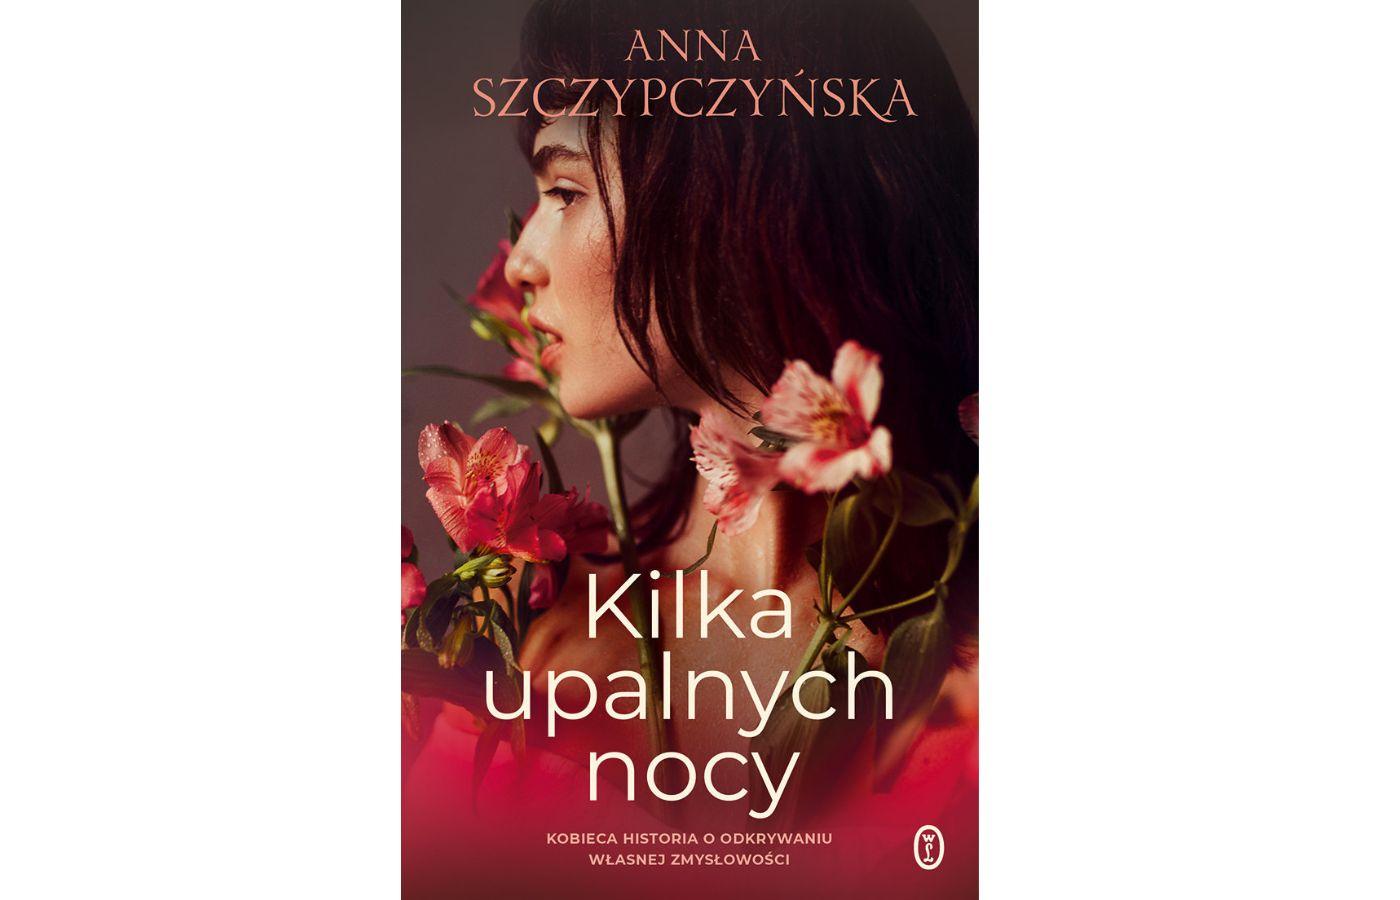 Anna Szczypczyńska, „Kilka upalnych nocy”, wyd. Wydawnictwo Literackie, s. 312